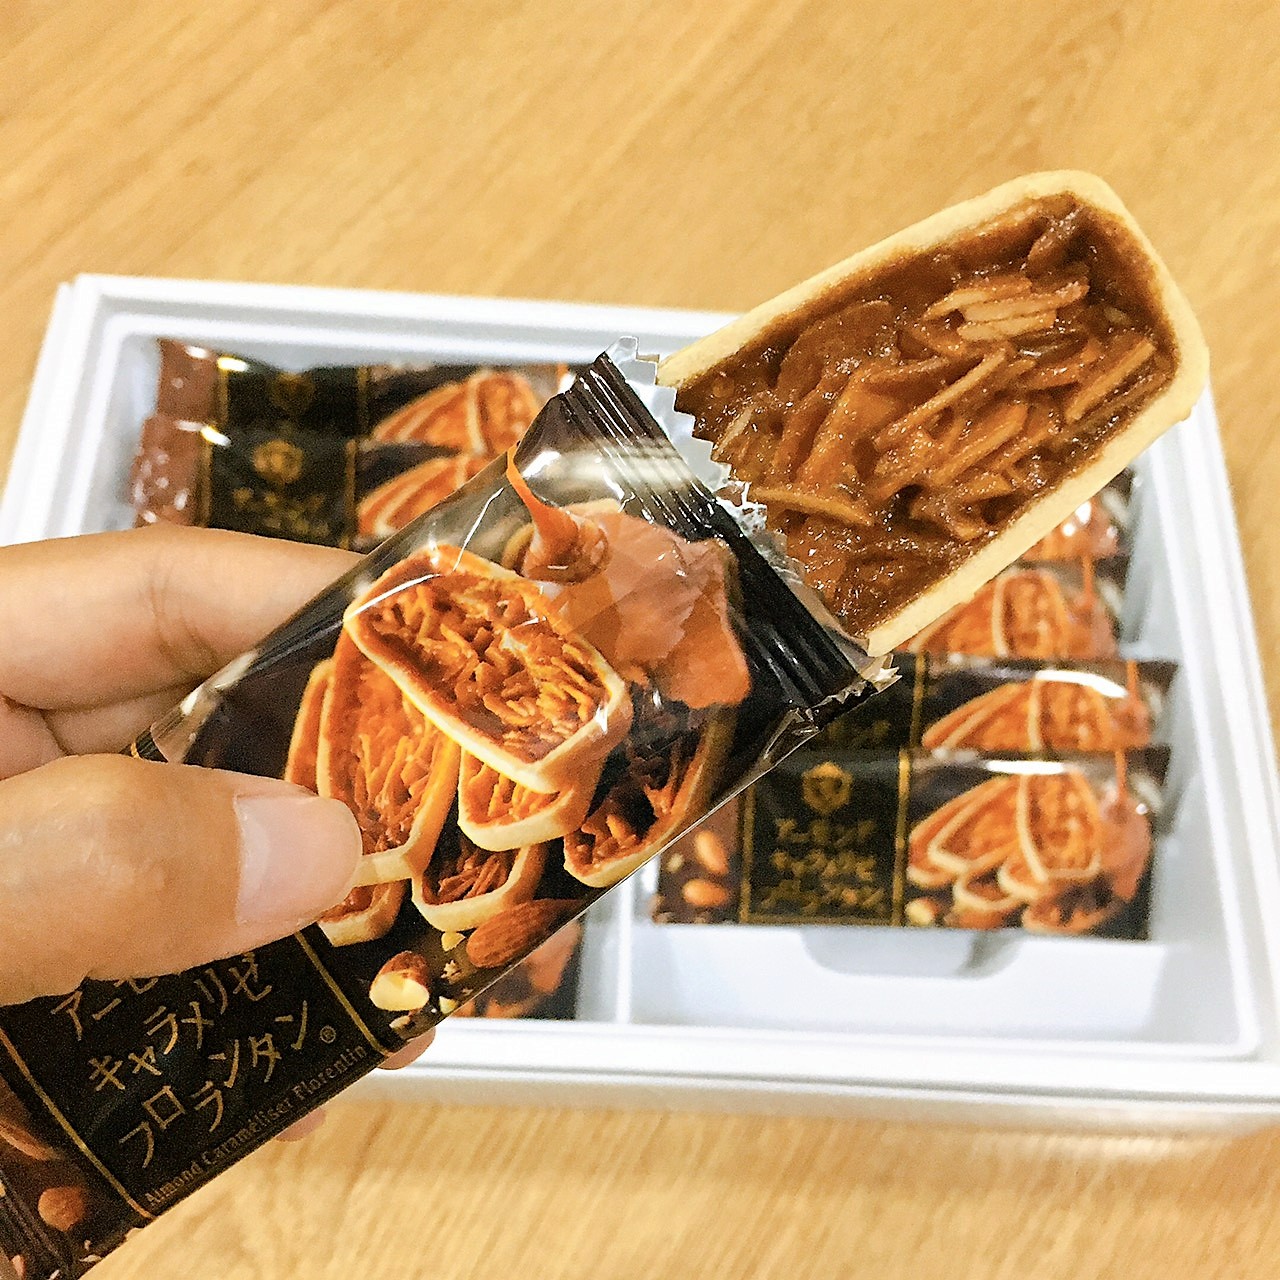 ขนมญี่ปุ่น ทาร์ตคาราเมลอัลมอนด์พรีเมียม จากฮอกไกโด ทาร์ตกรอบๆ ราดด้วยซอสคาราเมลอัลมอนด์  (1 กล่องมี 12 ชิ้น)